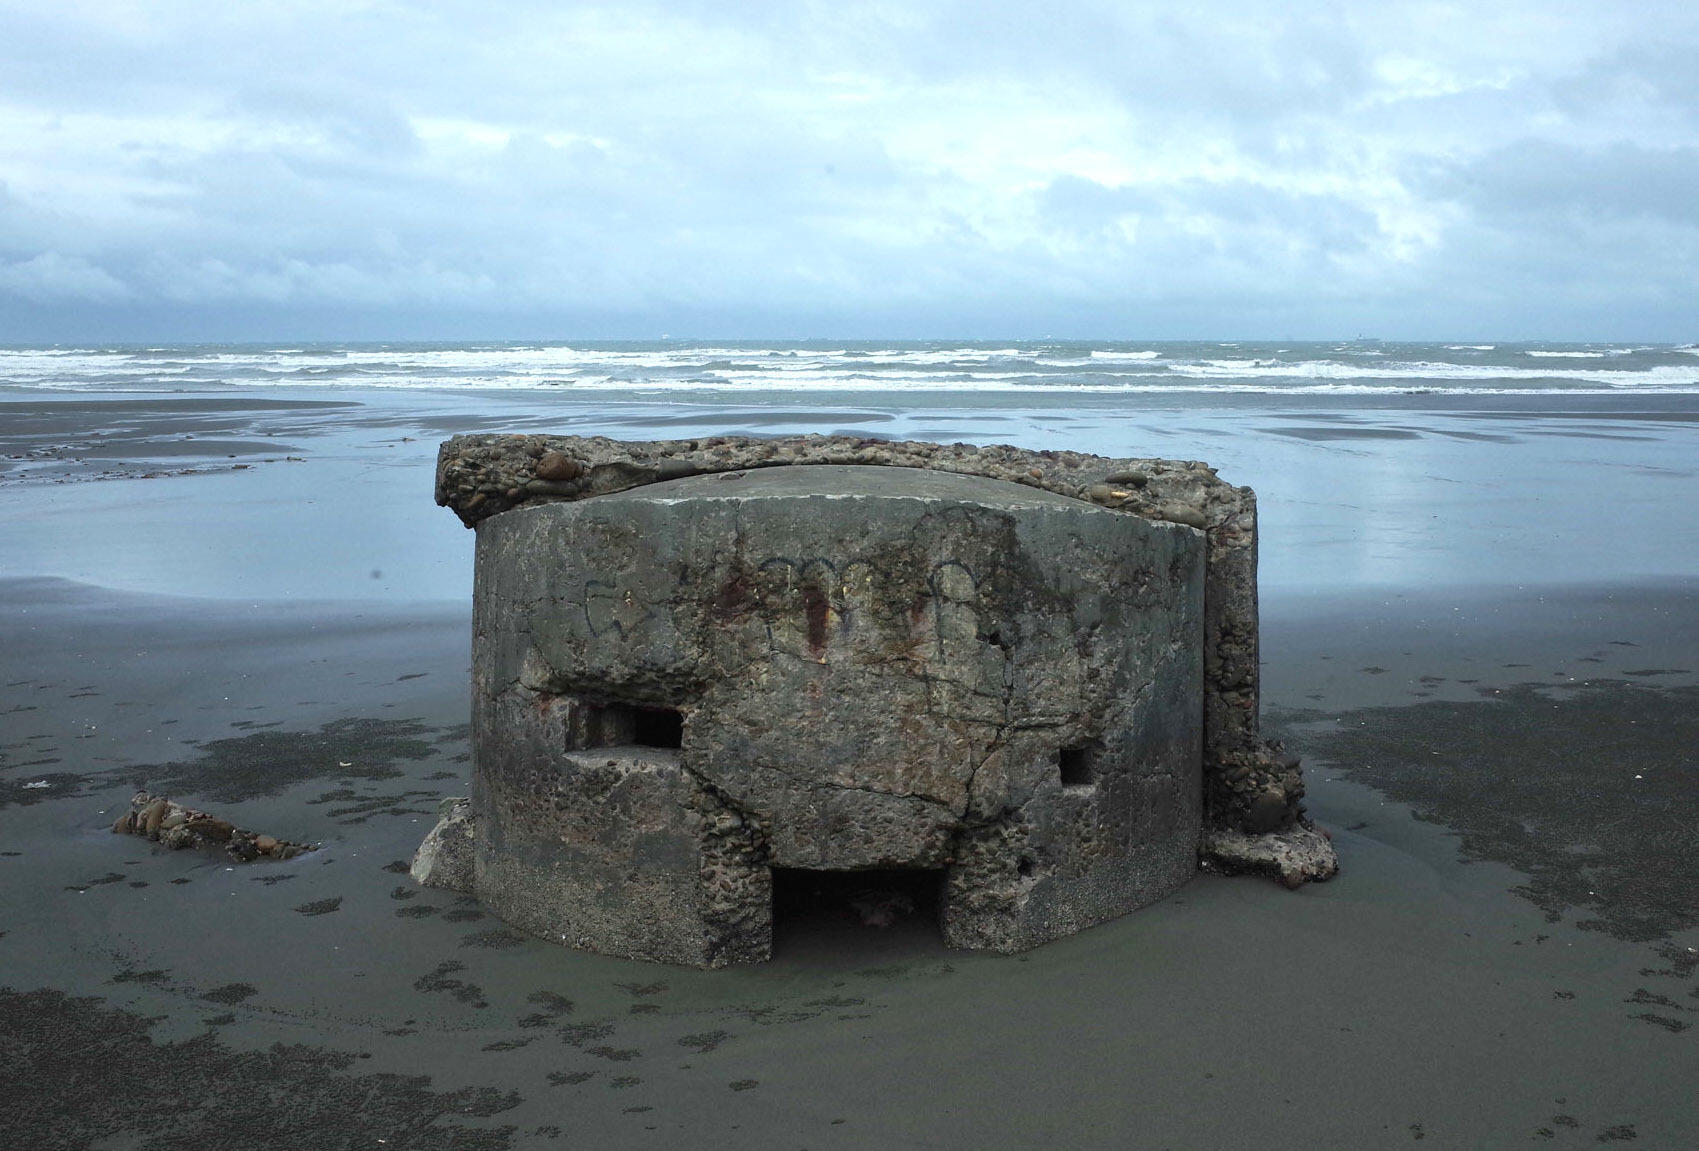 Ein alter Bunker an einem Strand in der Nähe des Flughafens Taoyuan.  Es gibt keine Anzeichen für neuere Verteidigungsanlagen auf diesem sogenannten "roter Strand".